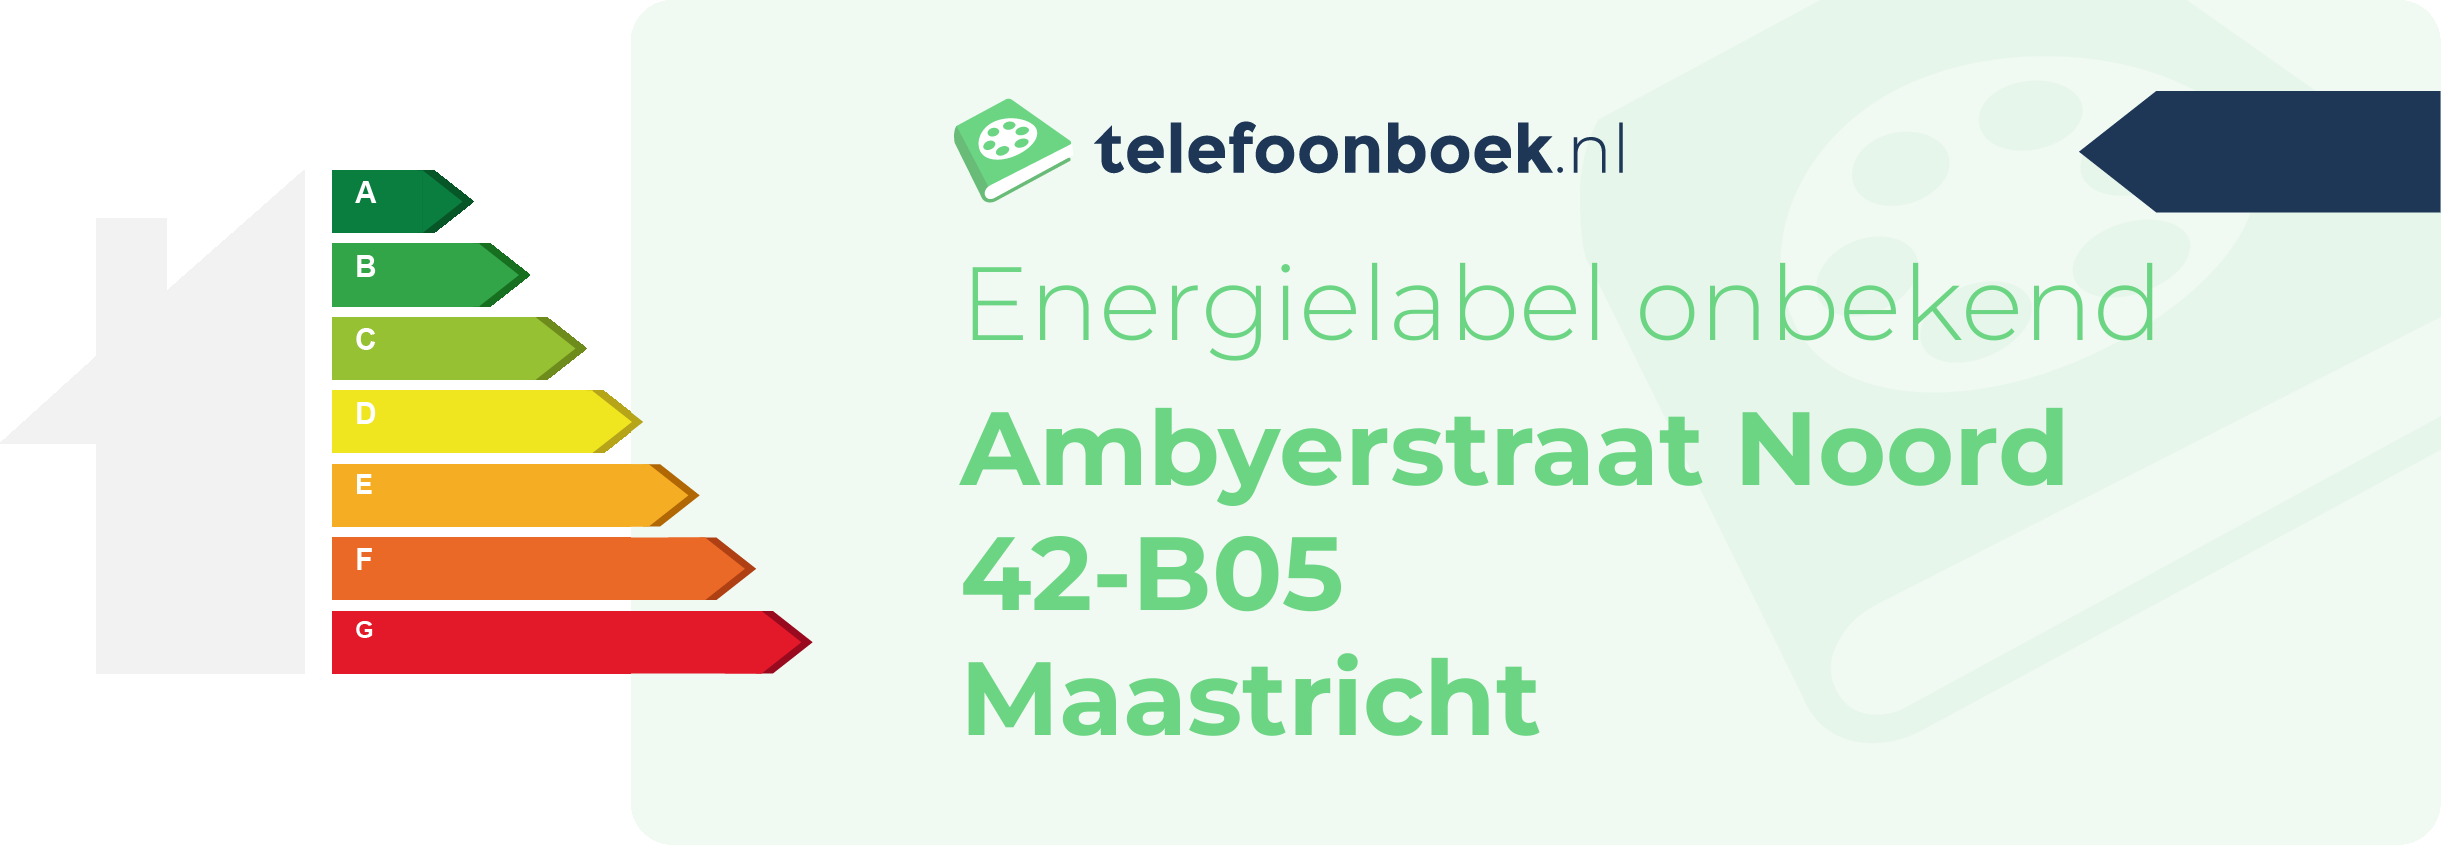 Energielabel Ambyerstraat Noord 42-B05 Maastricht